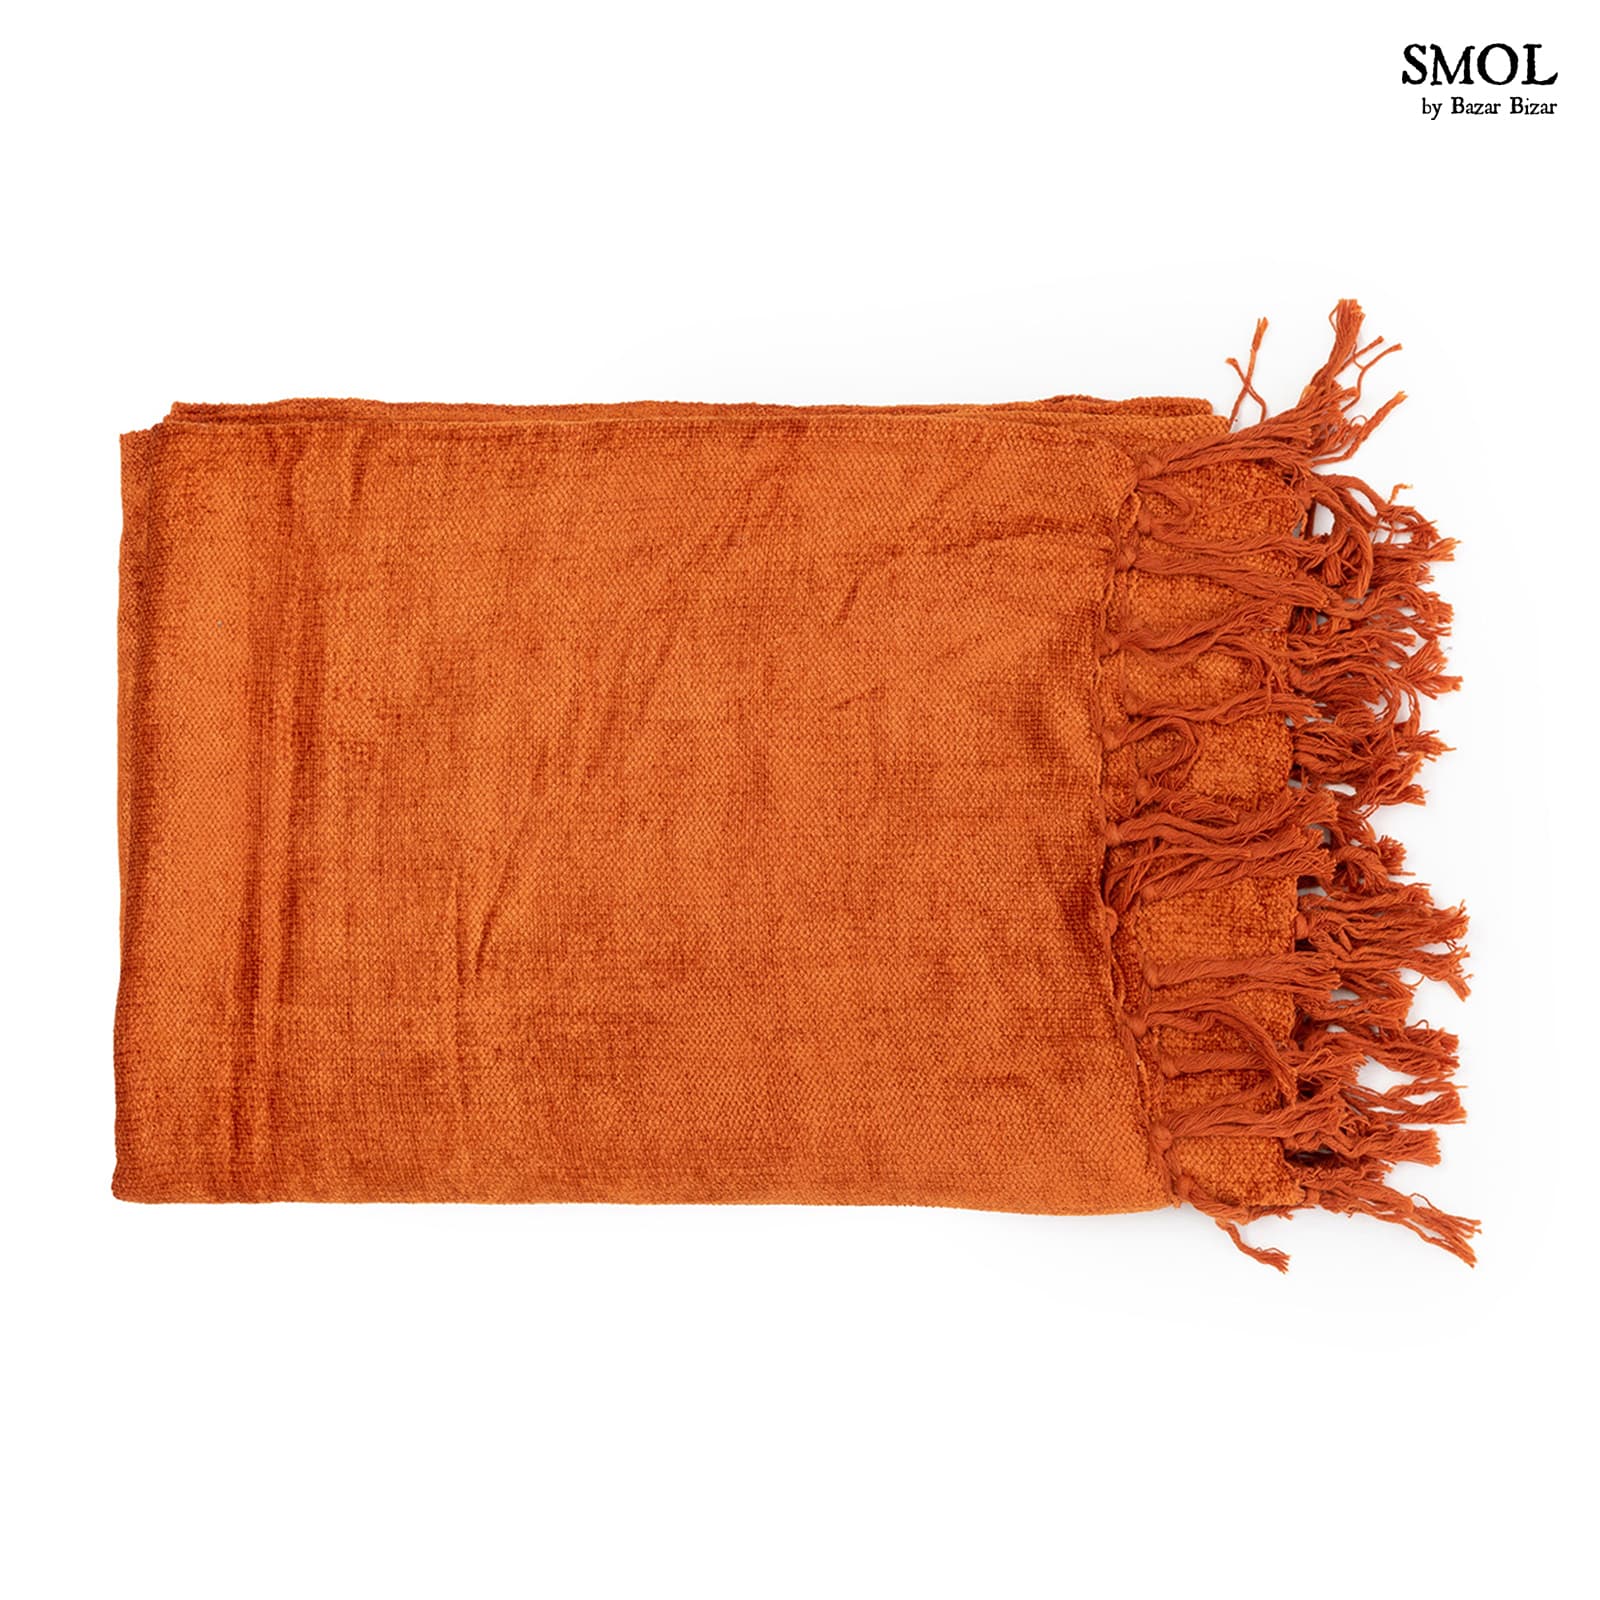 smol.hu - ROEST, rozsdaszín bársony takaró, 170x130 cm termékképe